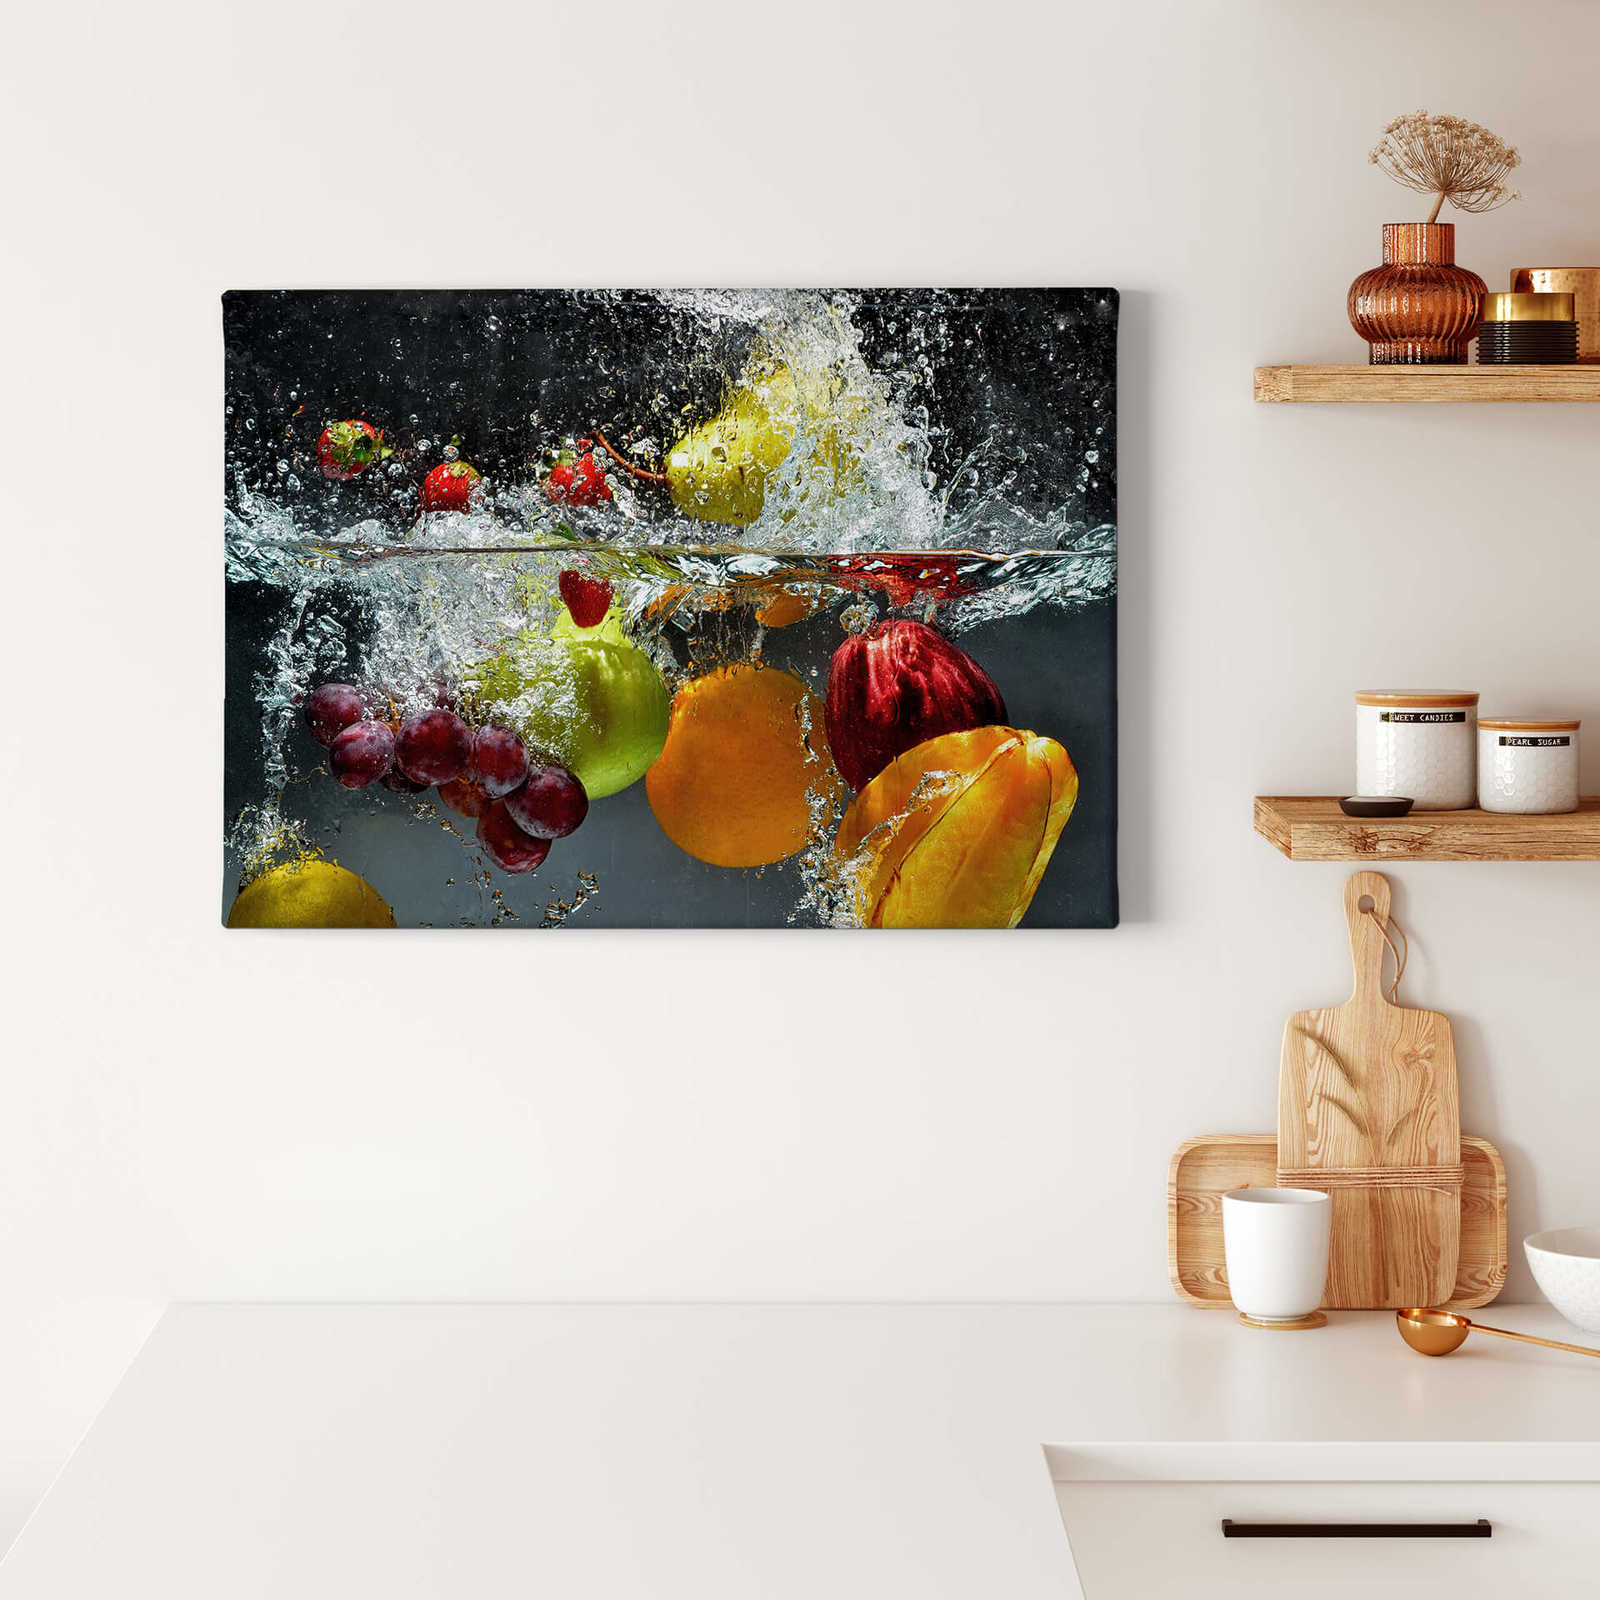             Canvas schilderij vers fruit in een waterbad - 0,70 m x 0,50 m
        